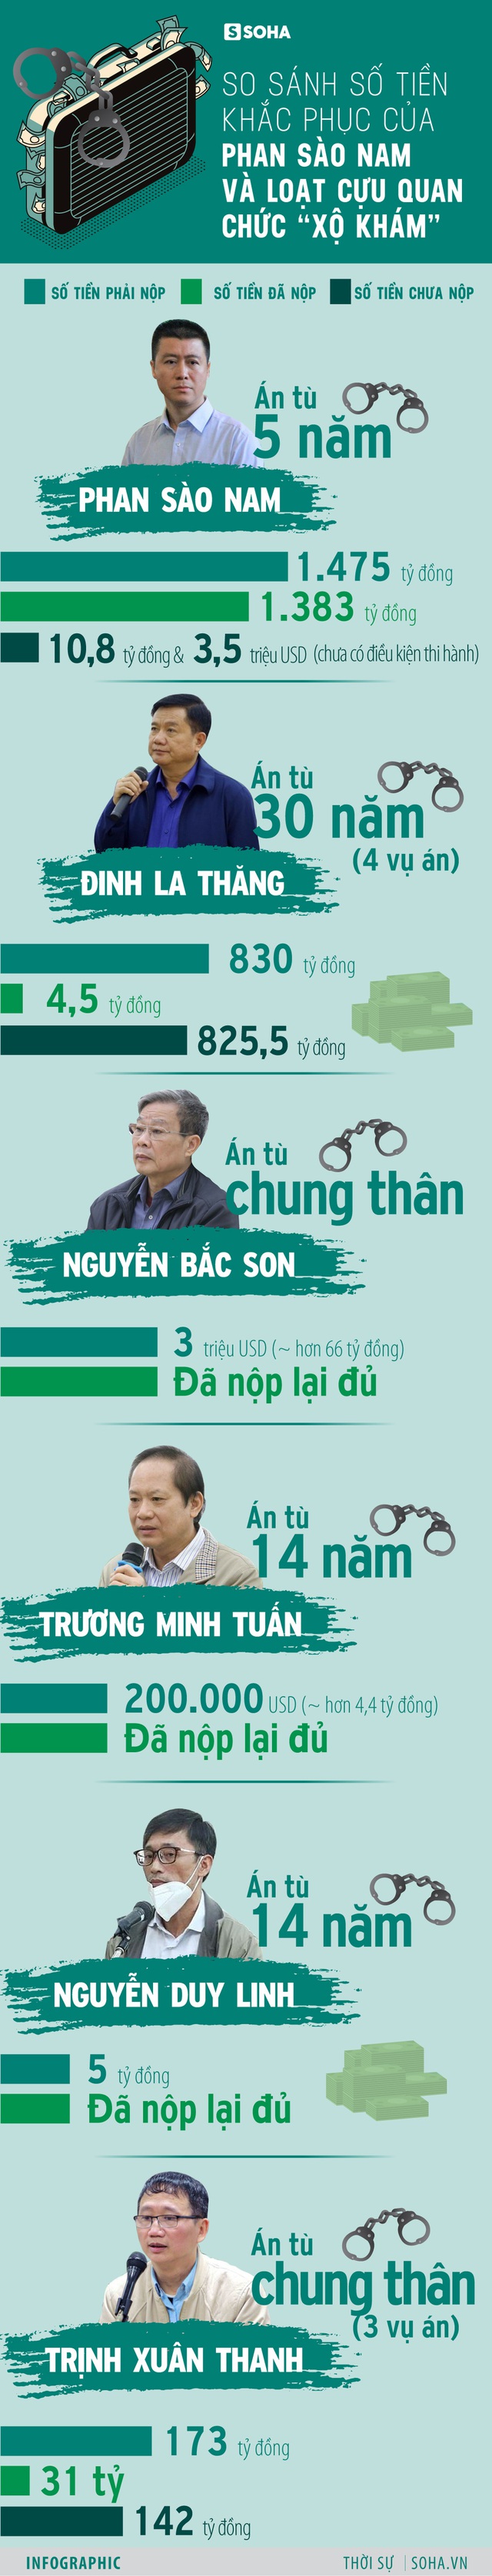 Phan Sào Nam khắc phục số tiền khủng- ông Đinh La Thăng nộp nhỏ giọt - Ảnh 1.